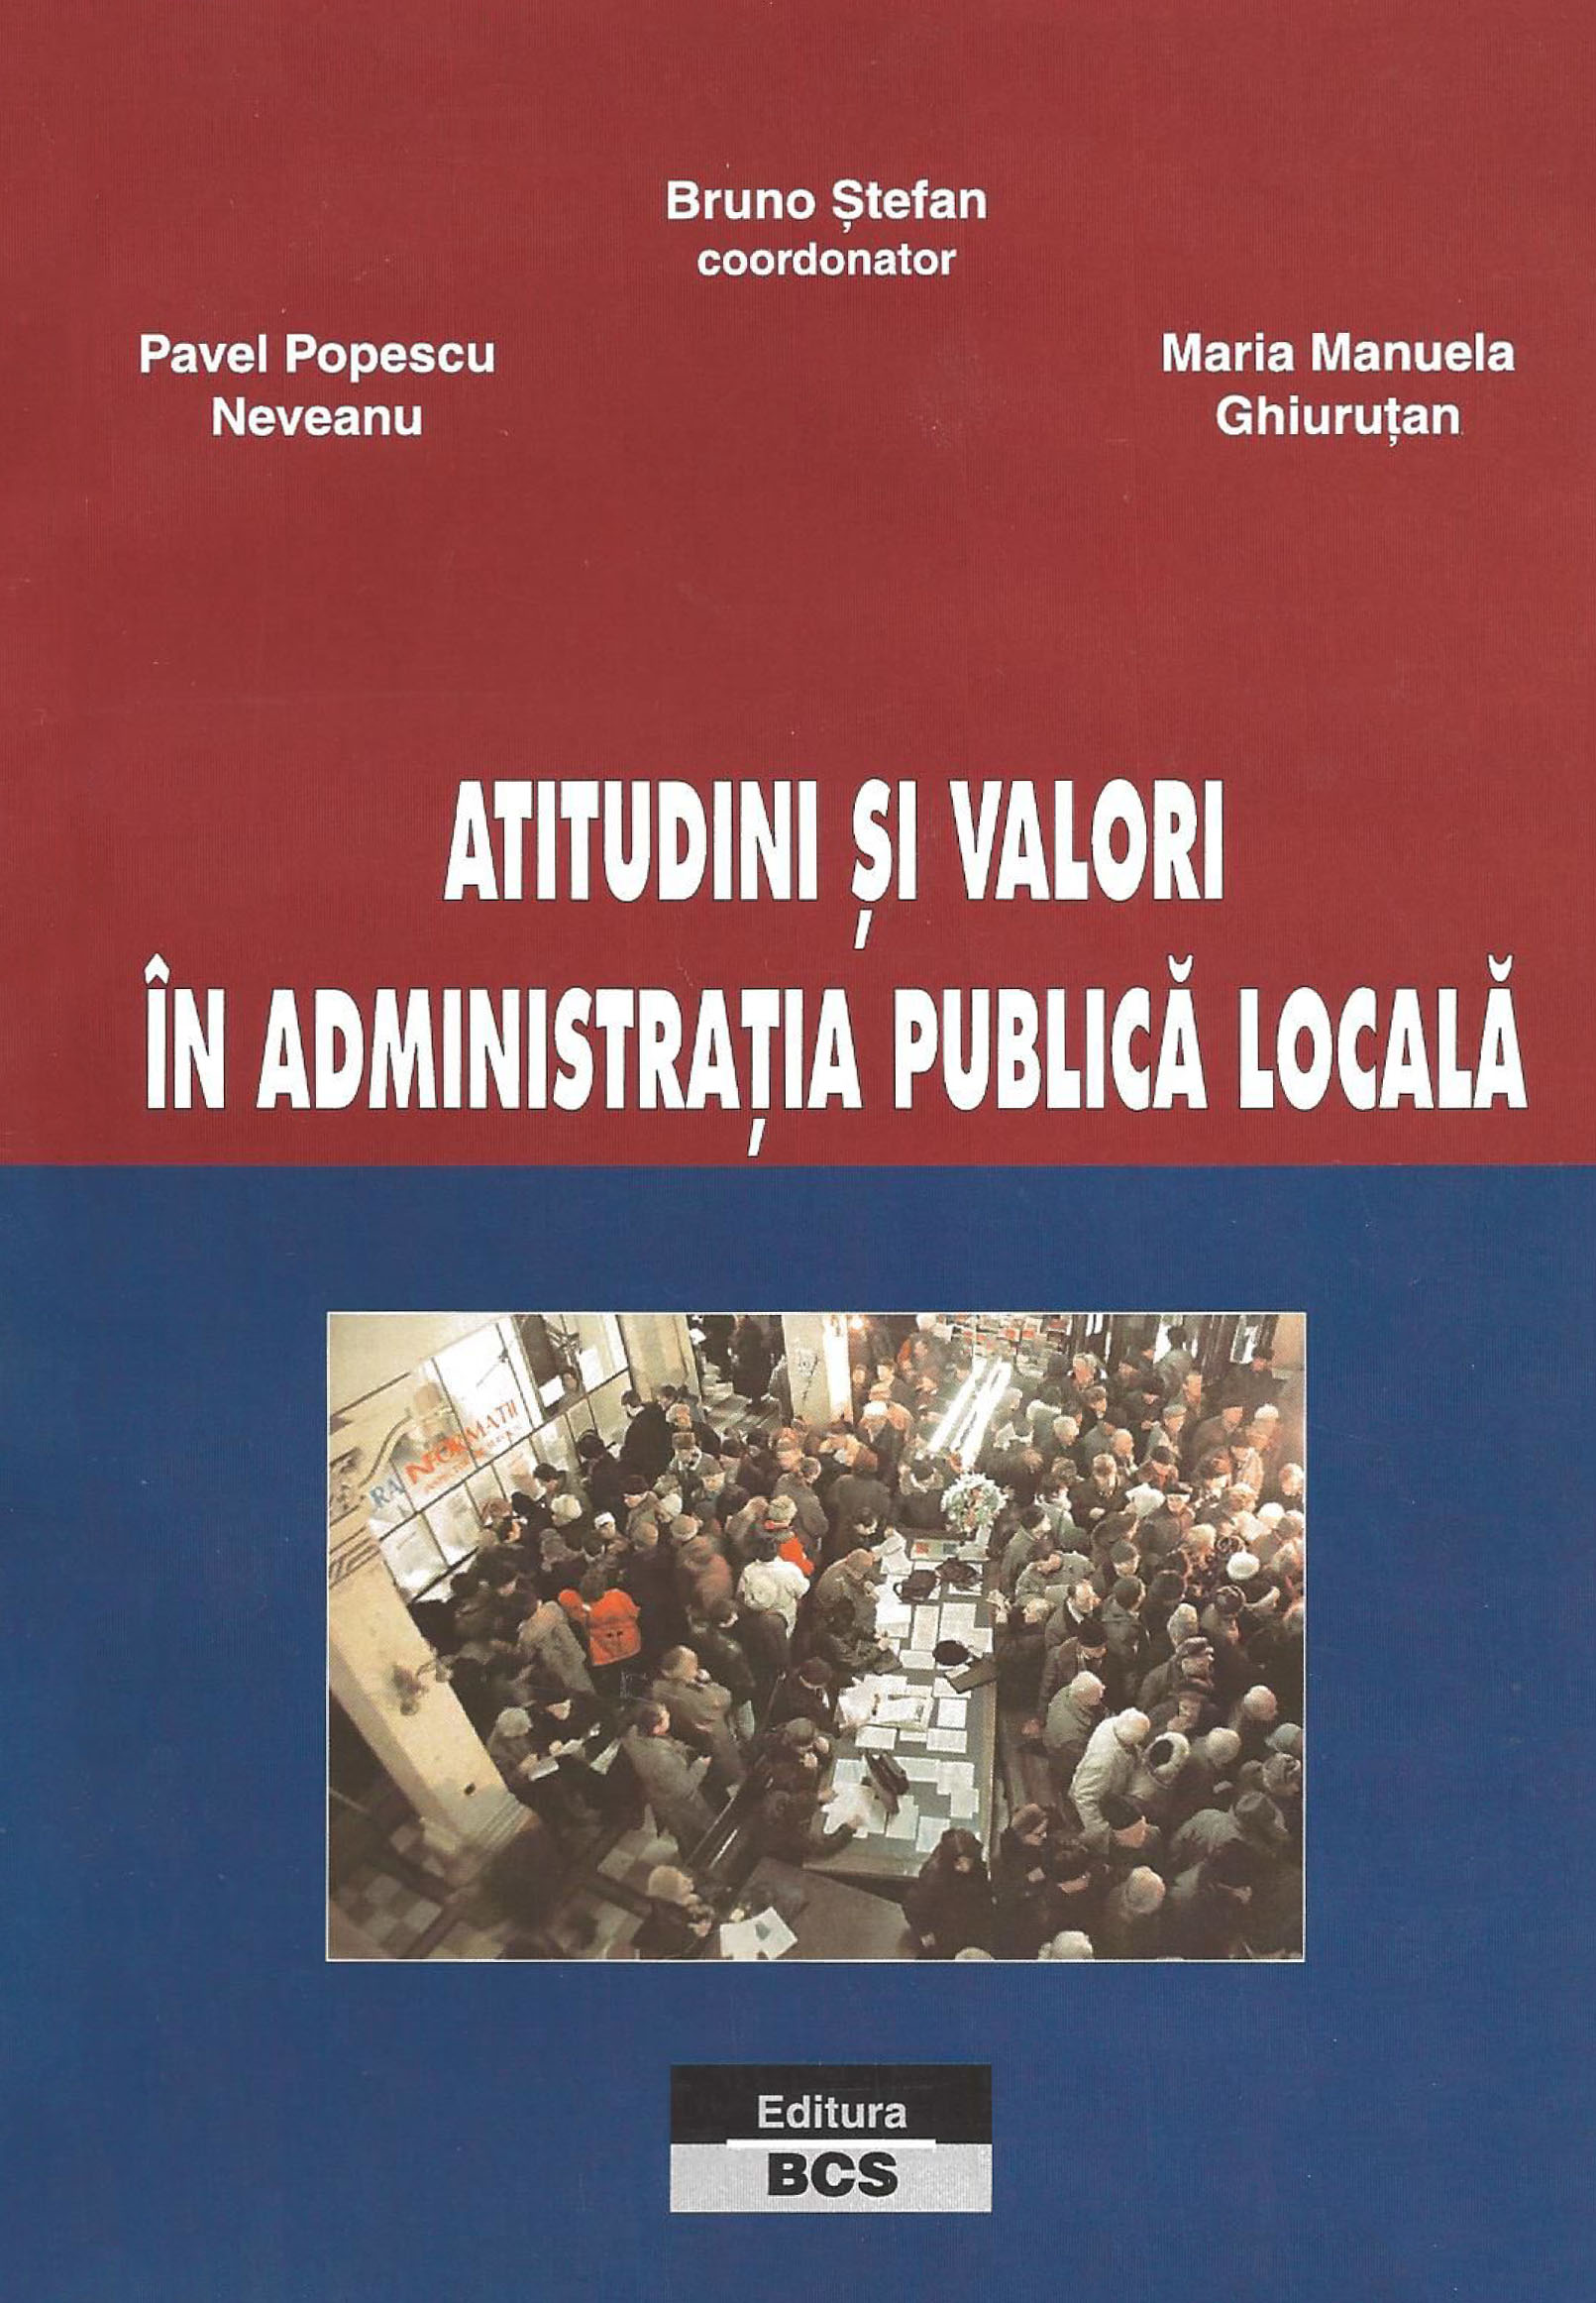 Atitudini și valori în administrația publică locală